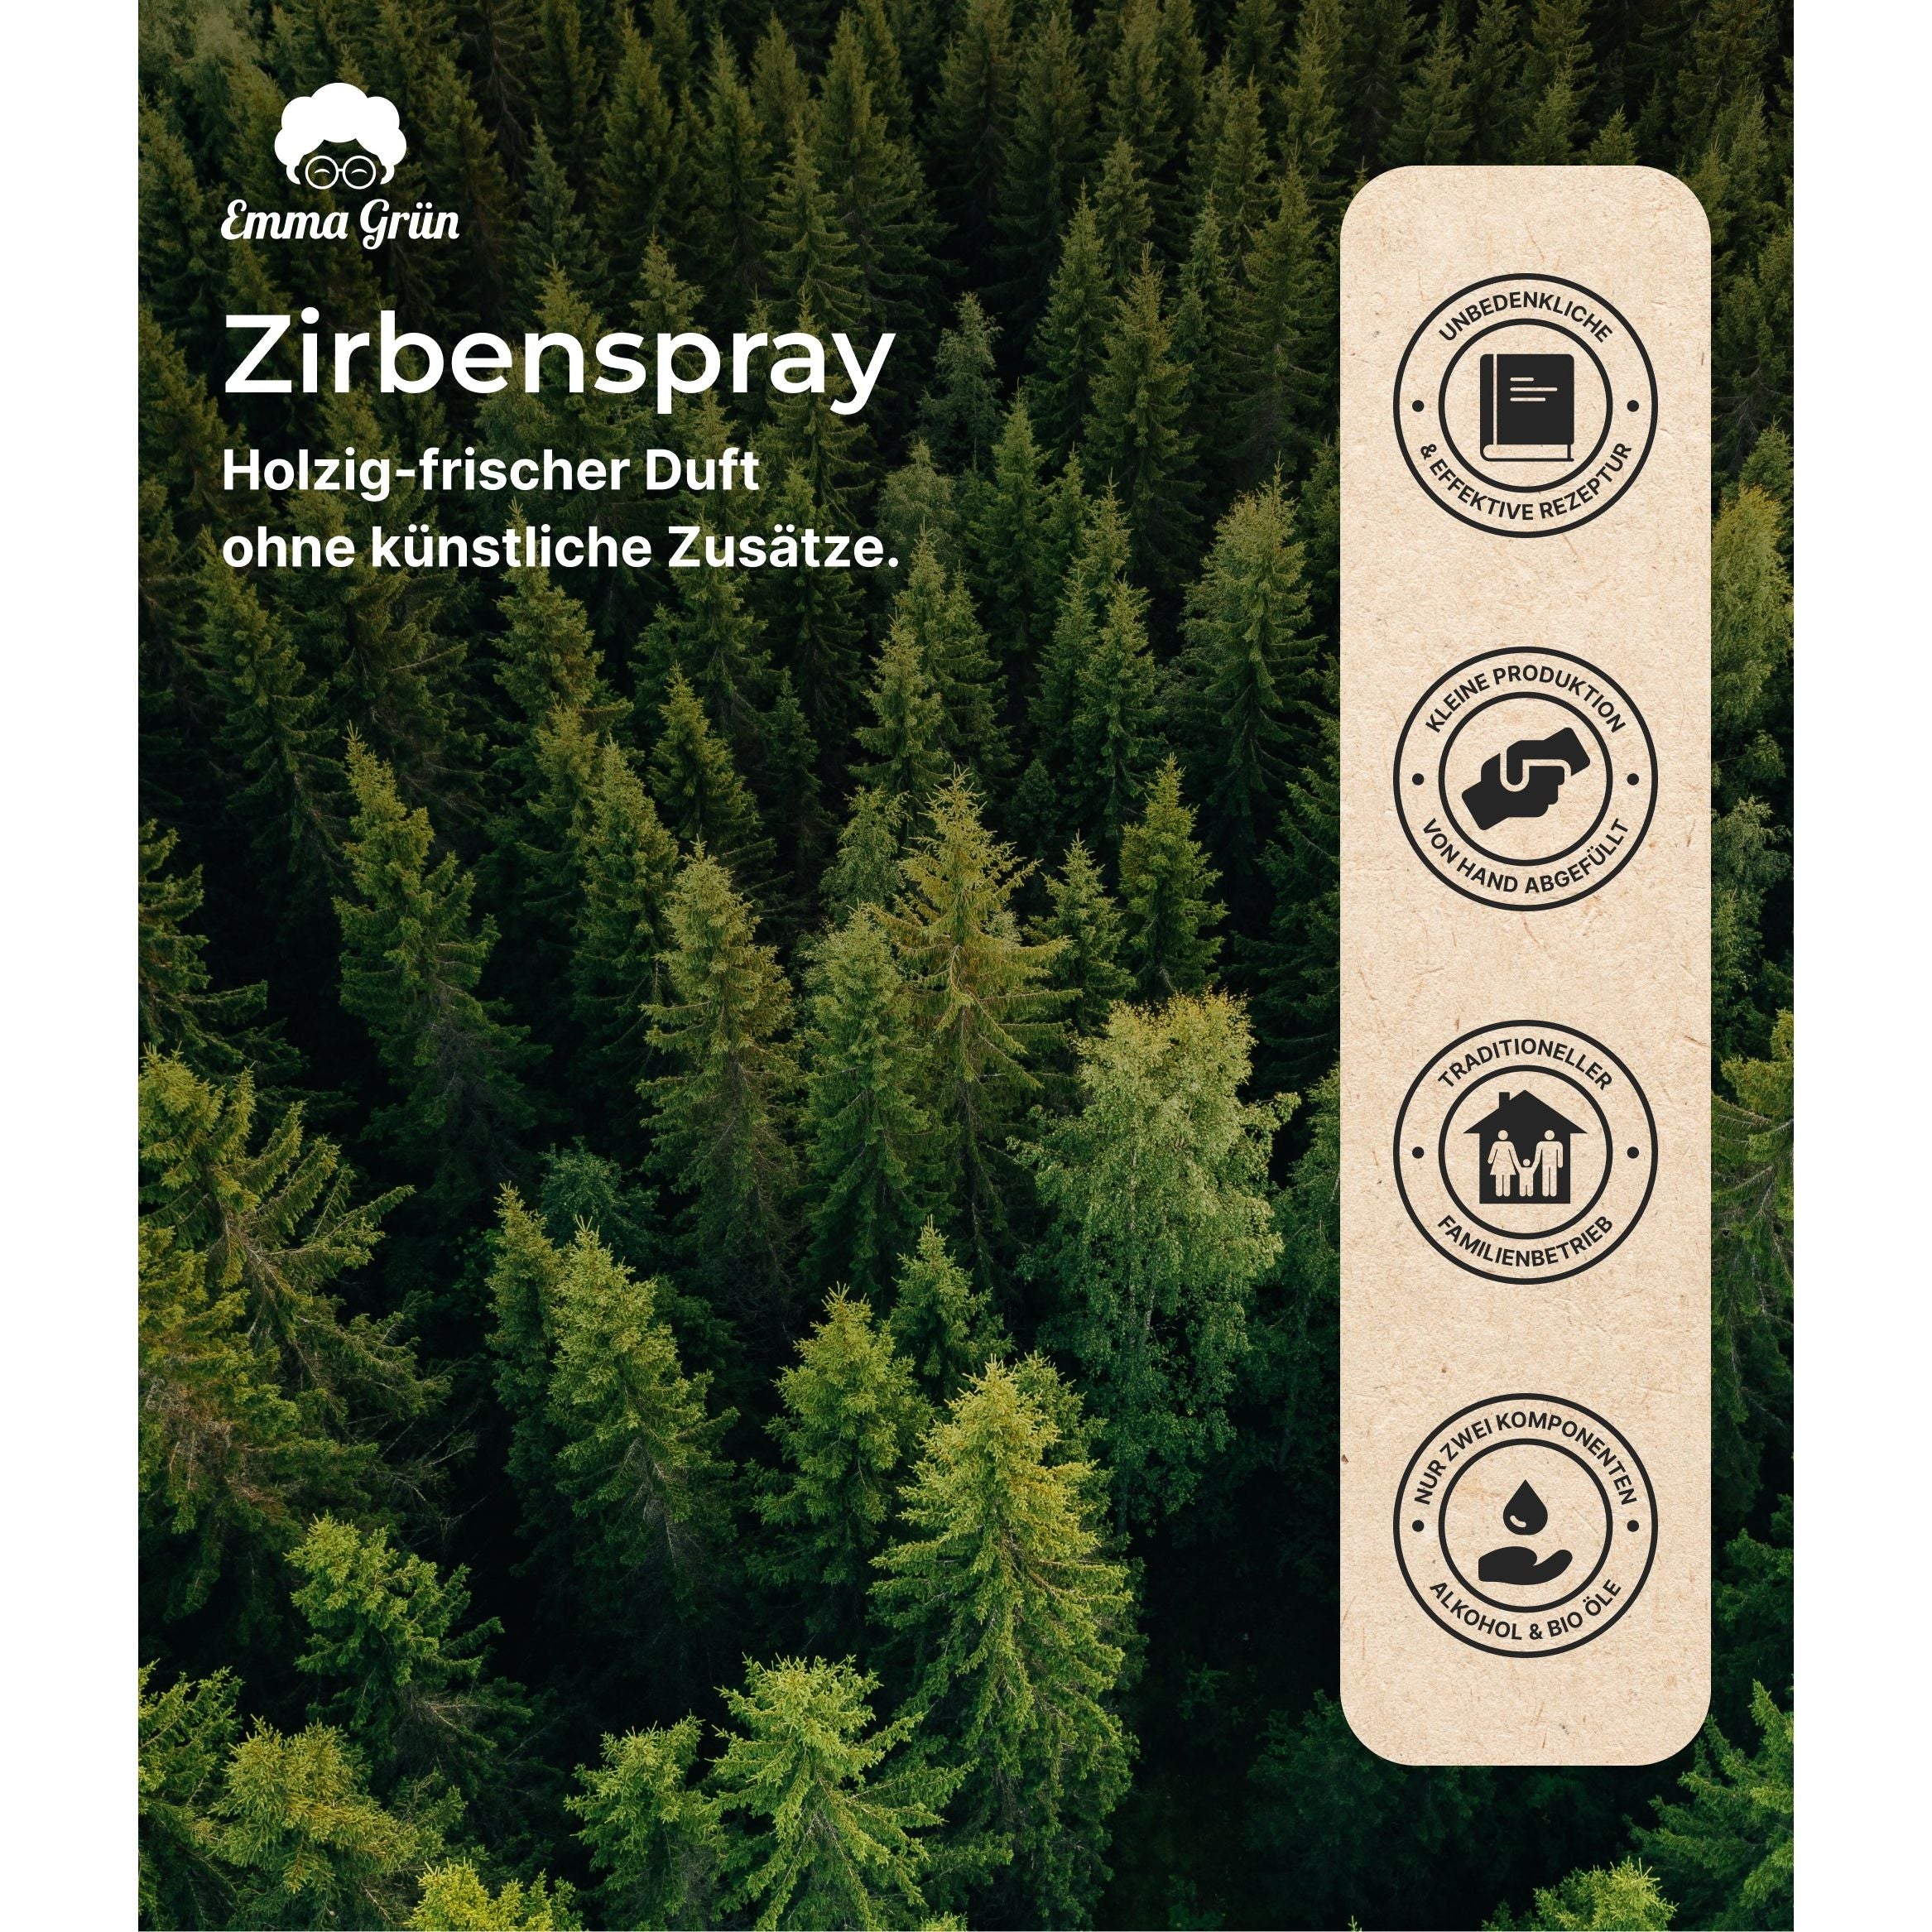 Zirben Raum- & Kissenspray 100 ml, natürlicher Duft mit Zirbenholzöl